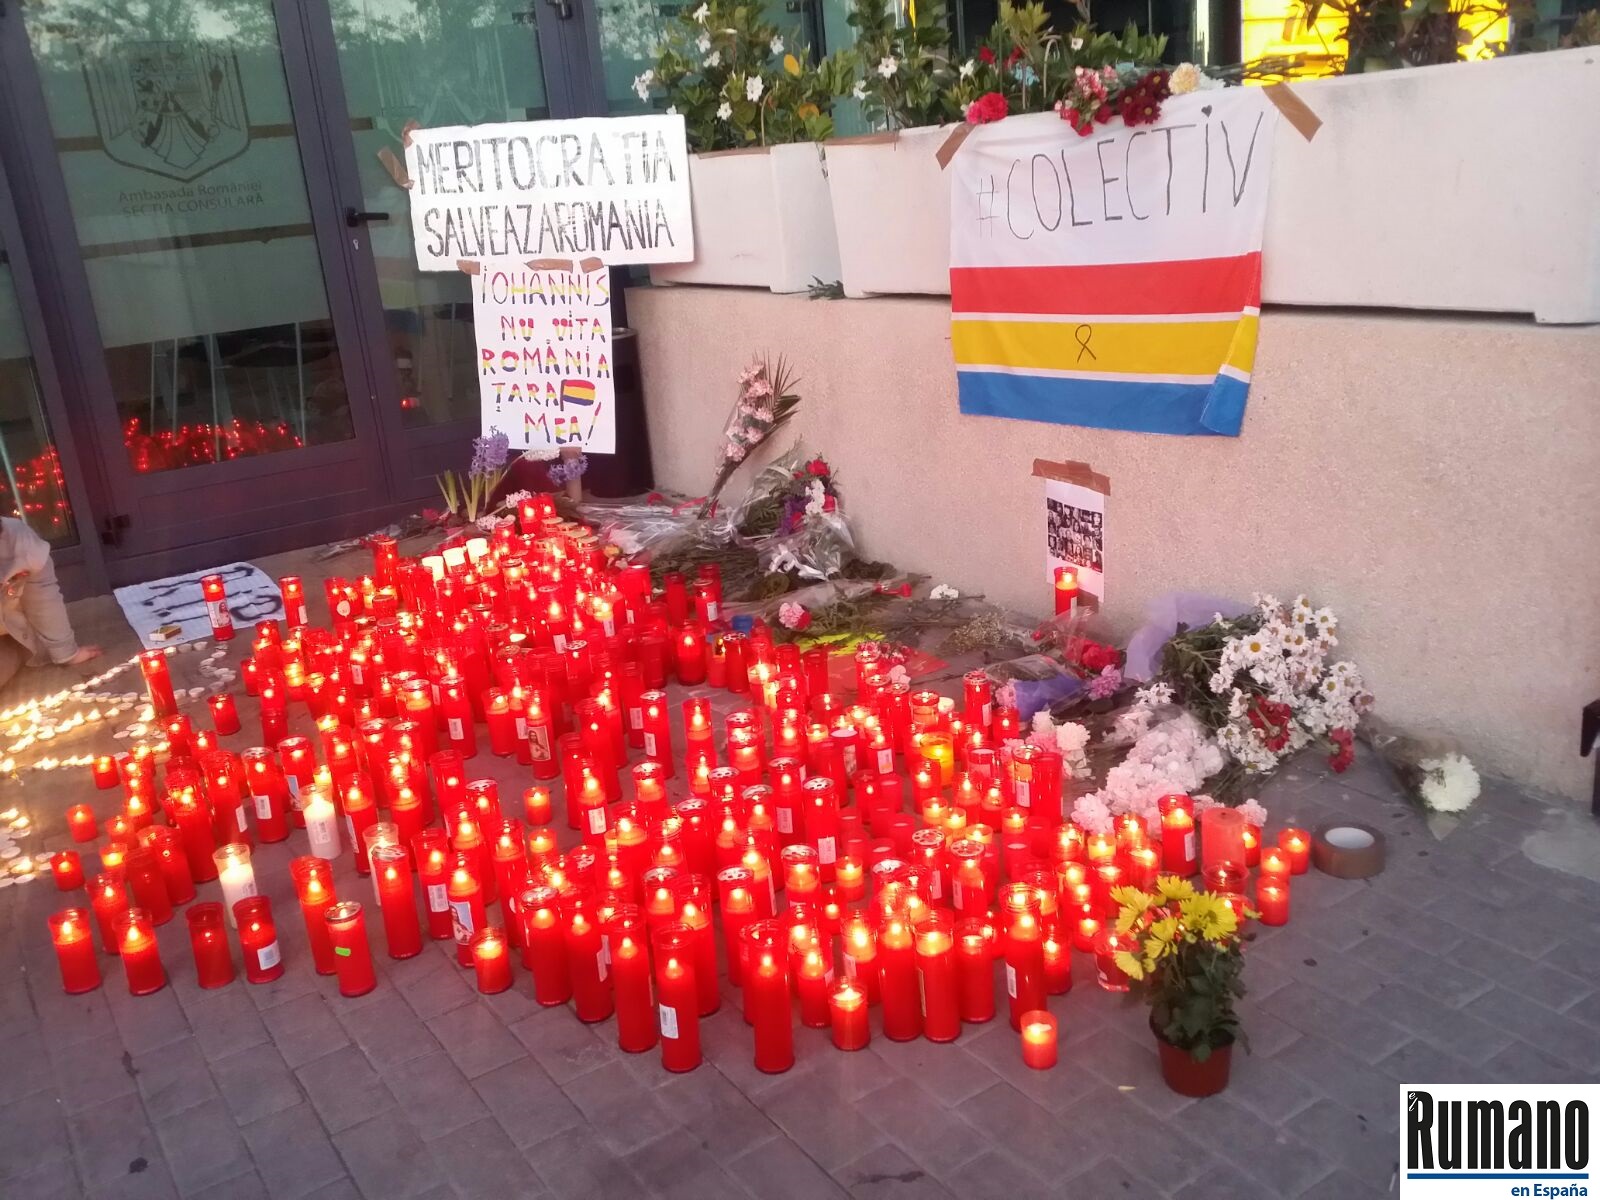 Protestele continuă la Madrid. Românii din diaspora alături de românii din țară